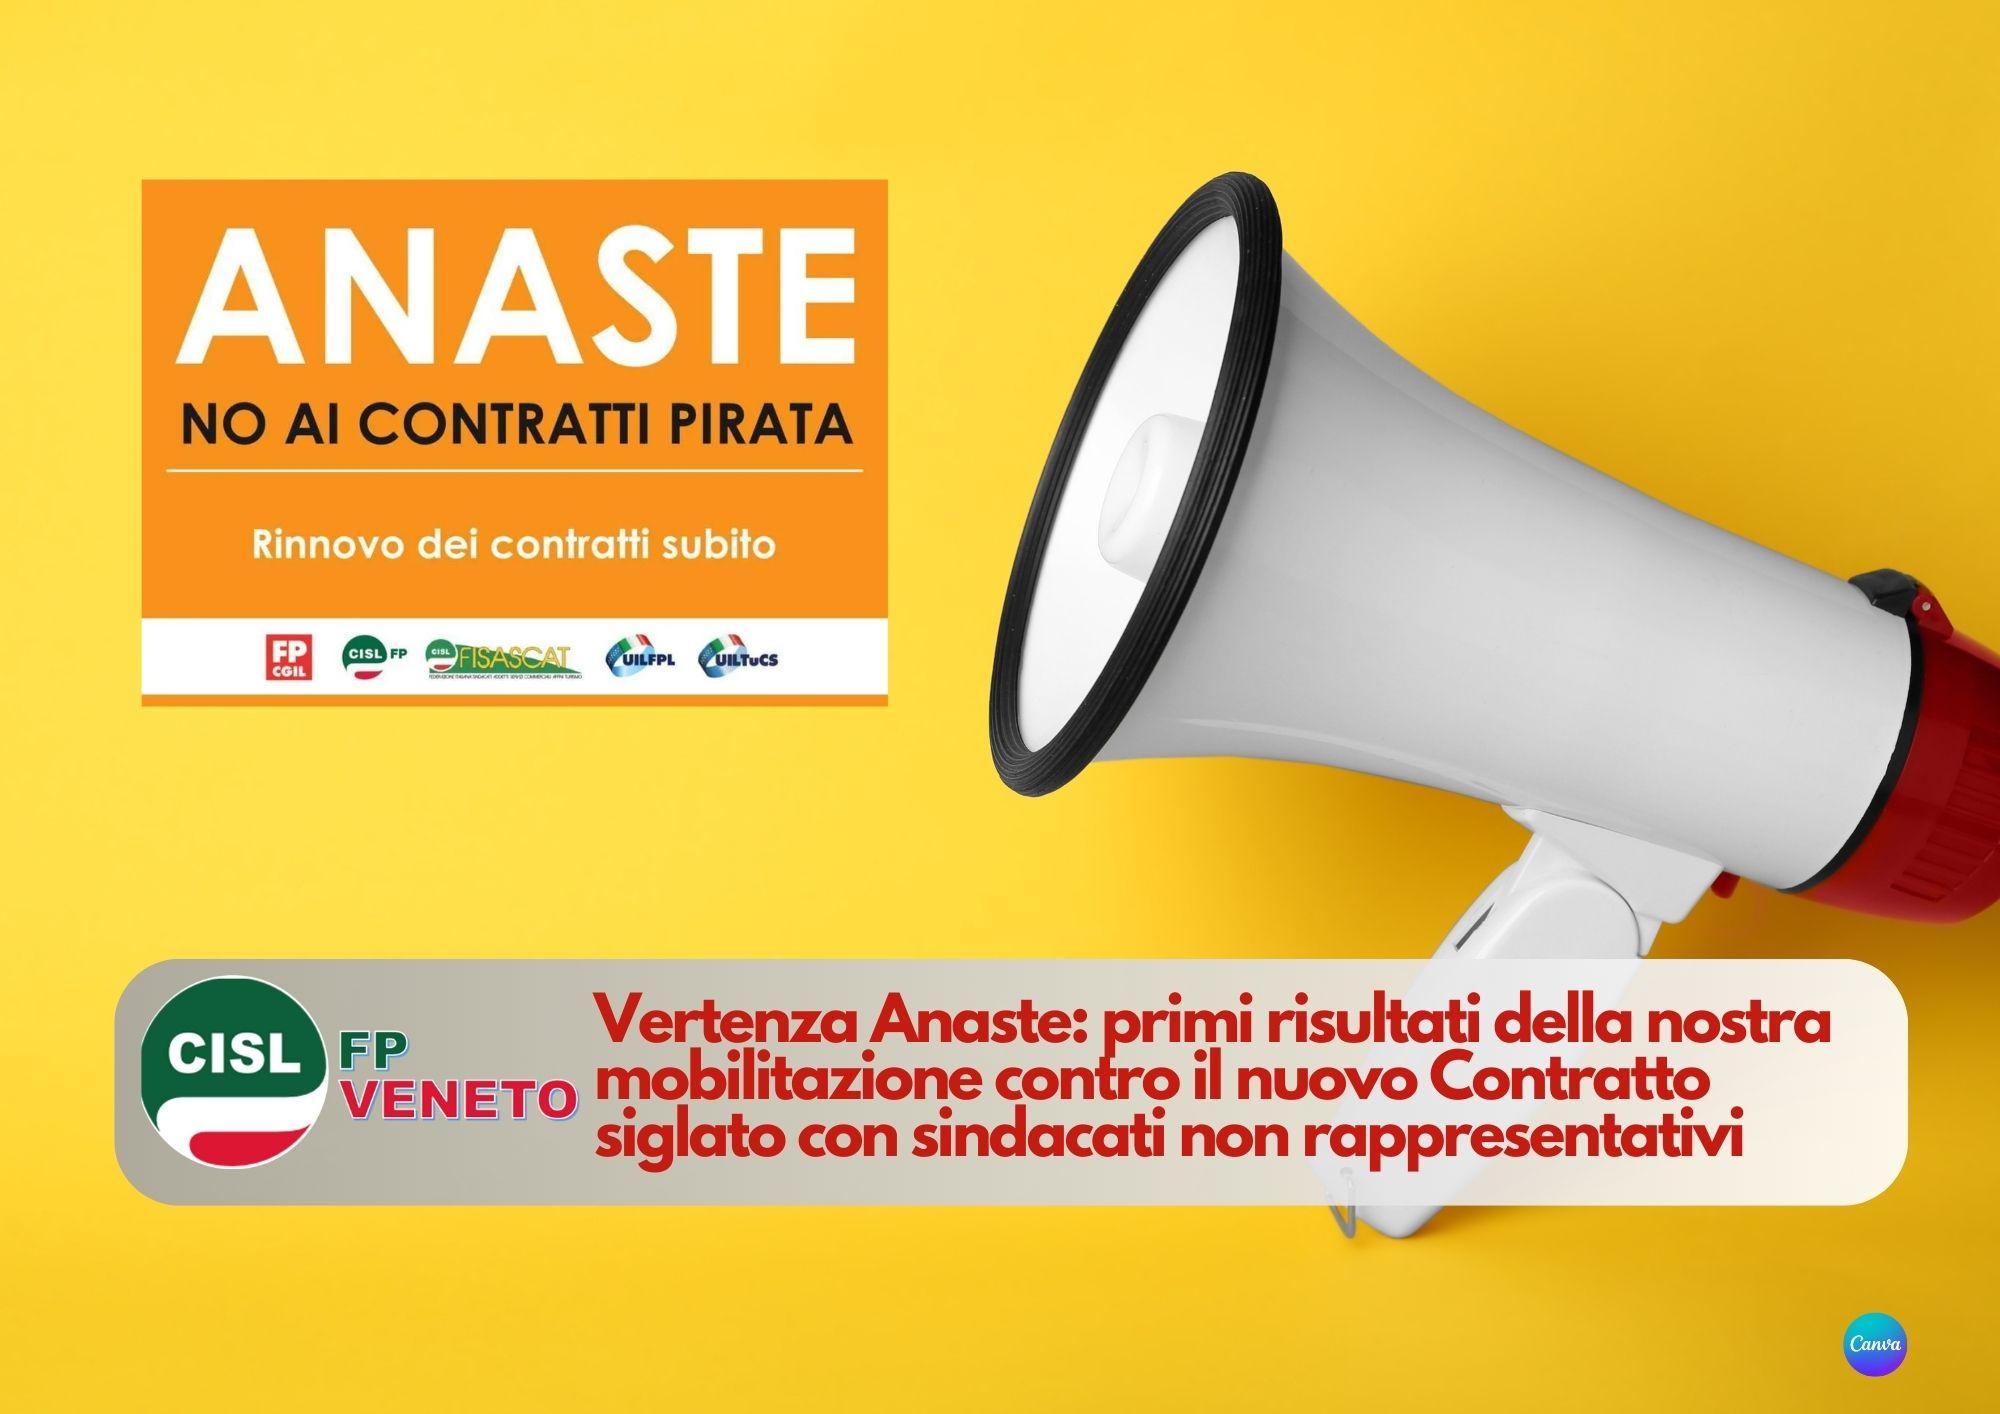 CISL FP Veneto. Vertenza Anaste: primi risultati della nostra mobilitazione contro il nuovo Contratto